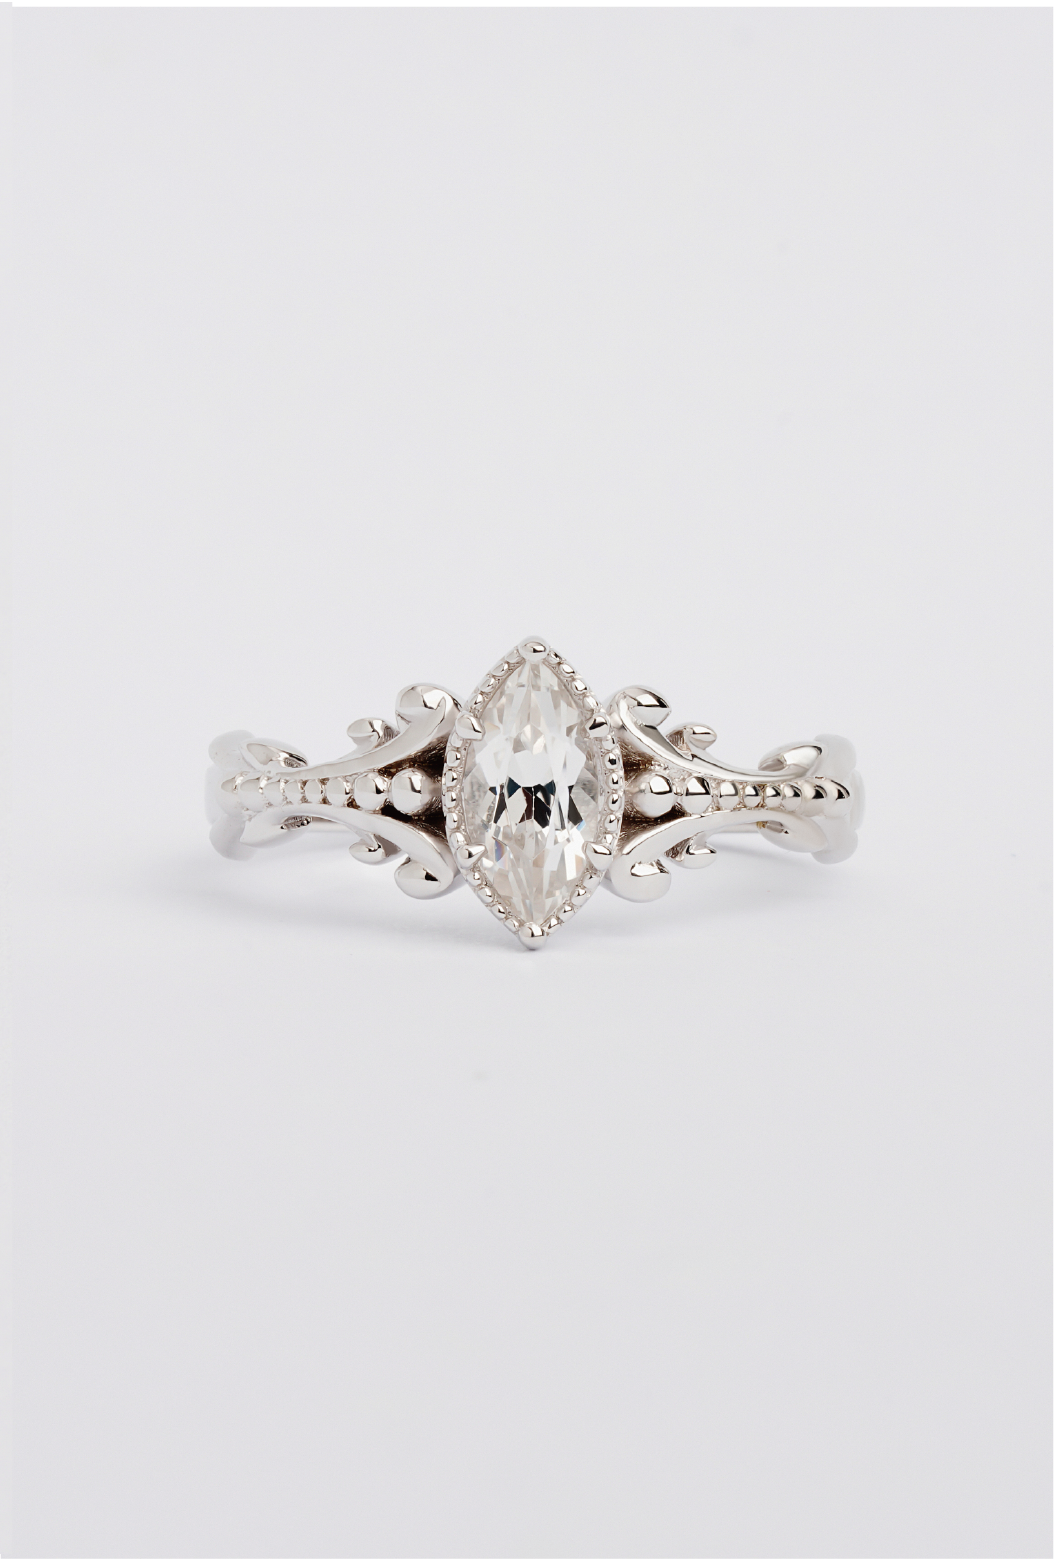 vintage baroque Ring. R-008